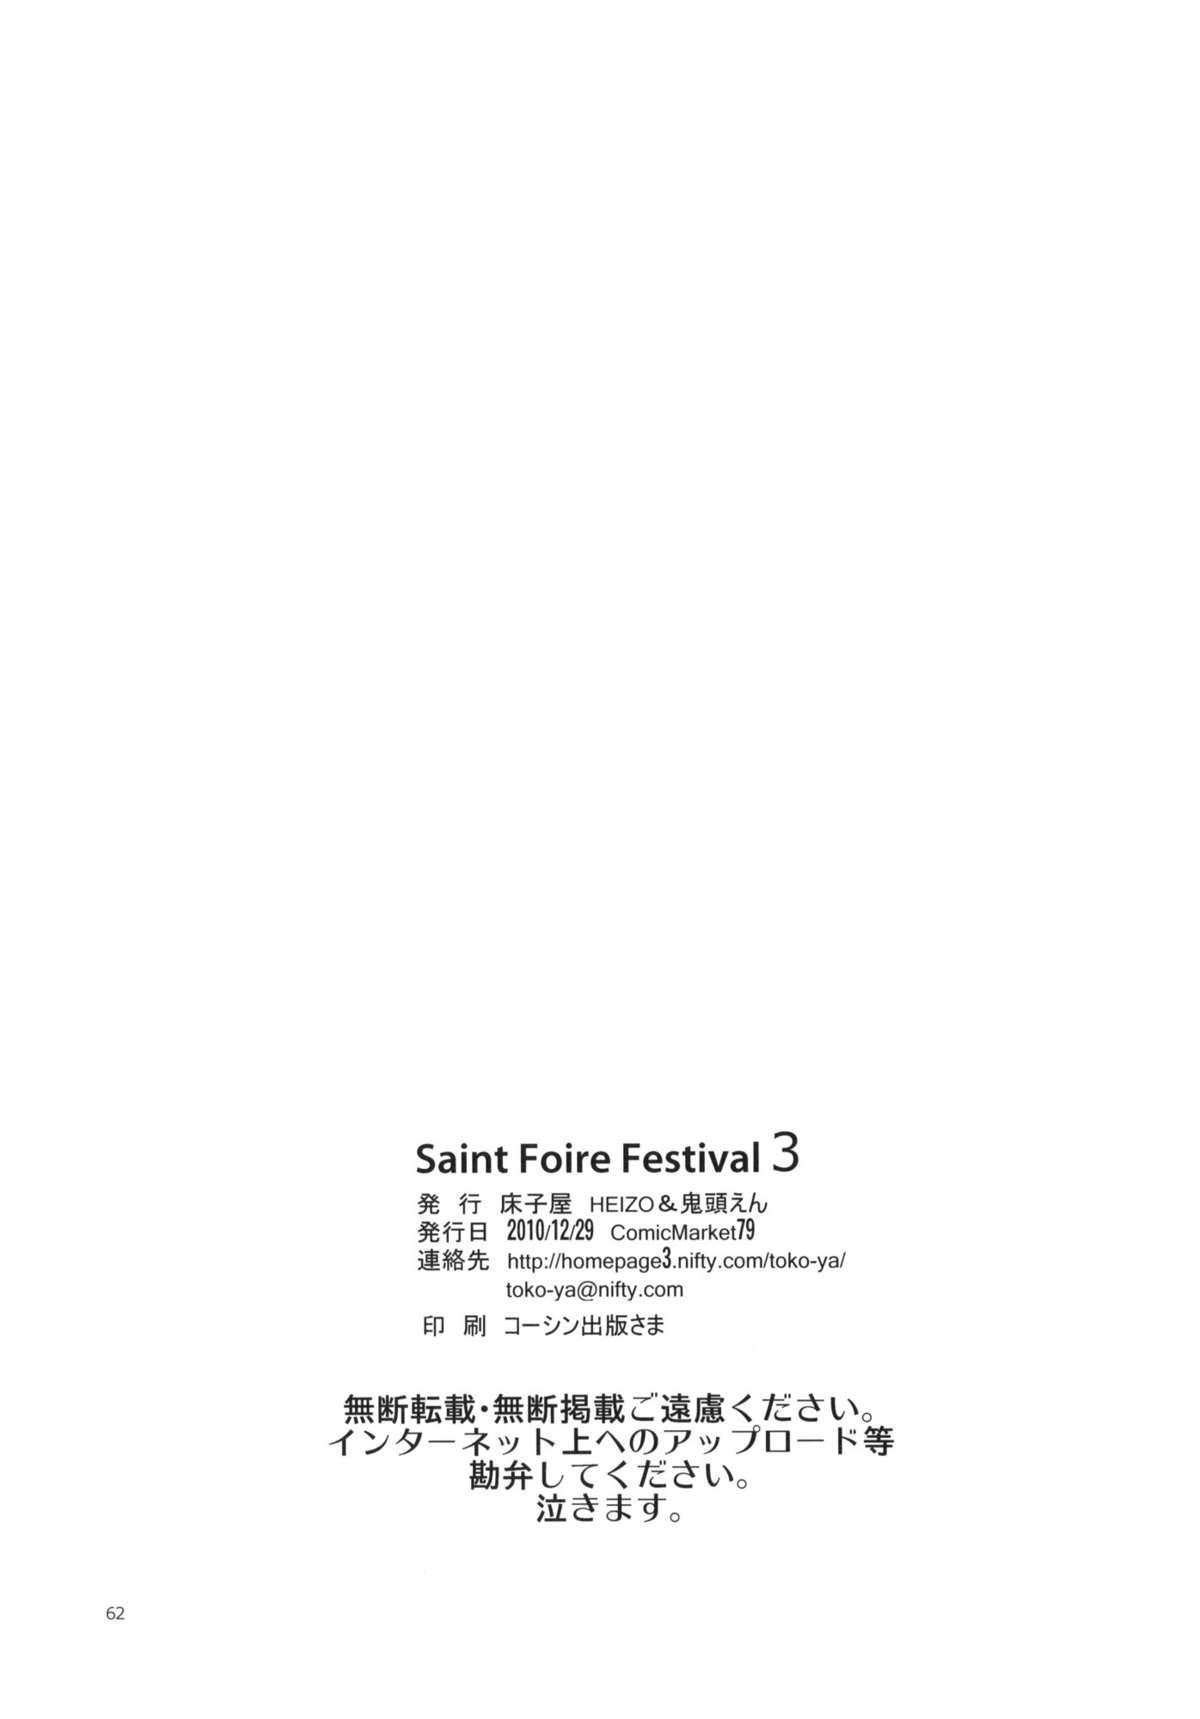 Francaise Saint Foire Festival 3 Richildis Free Amature Porn - Page 61